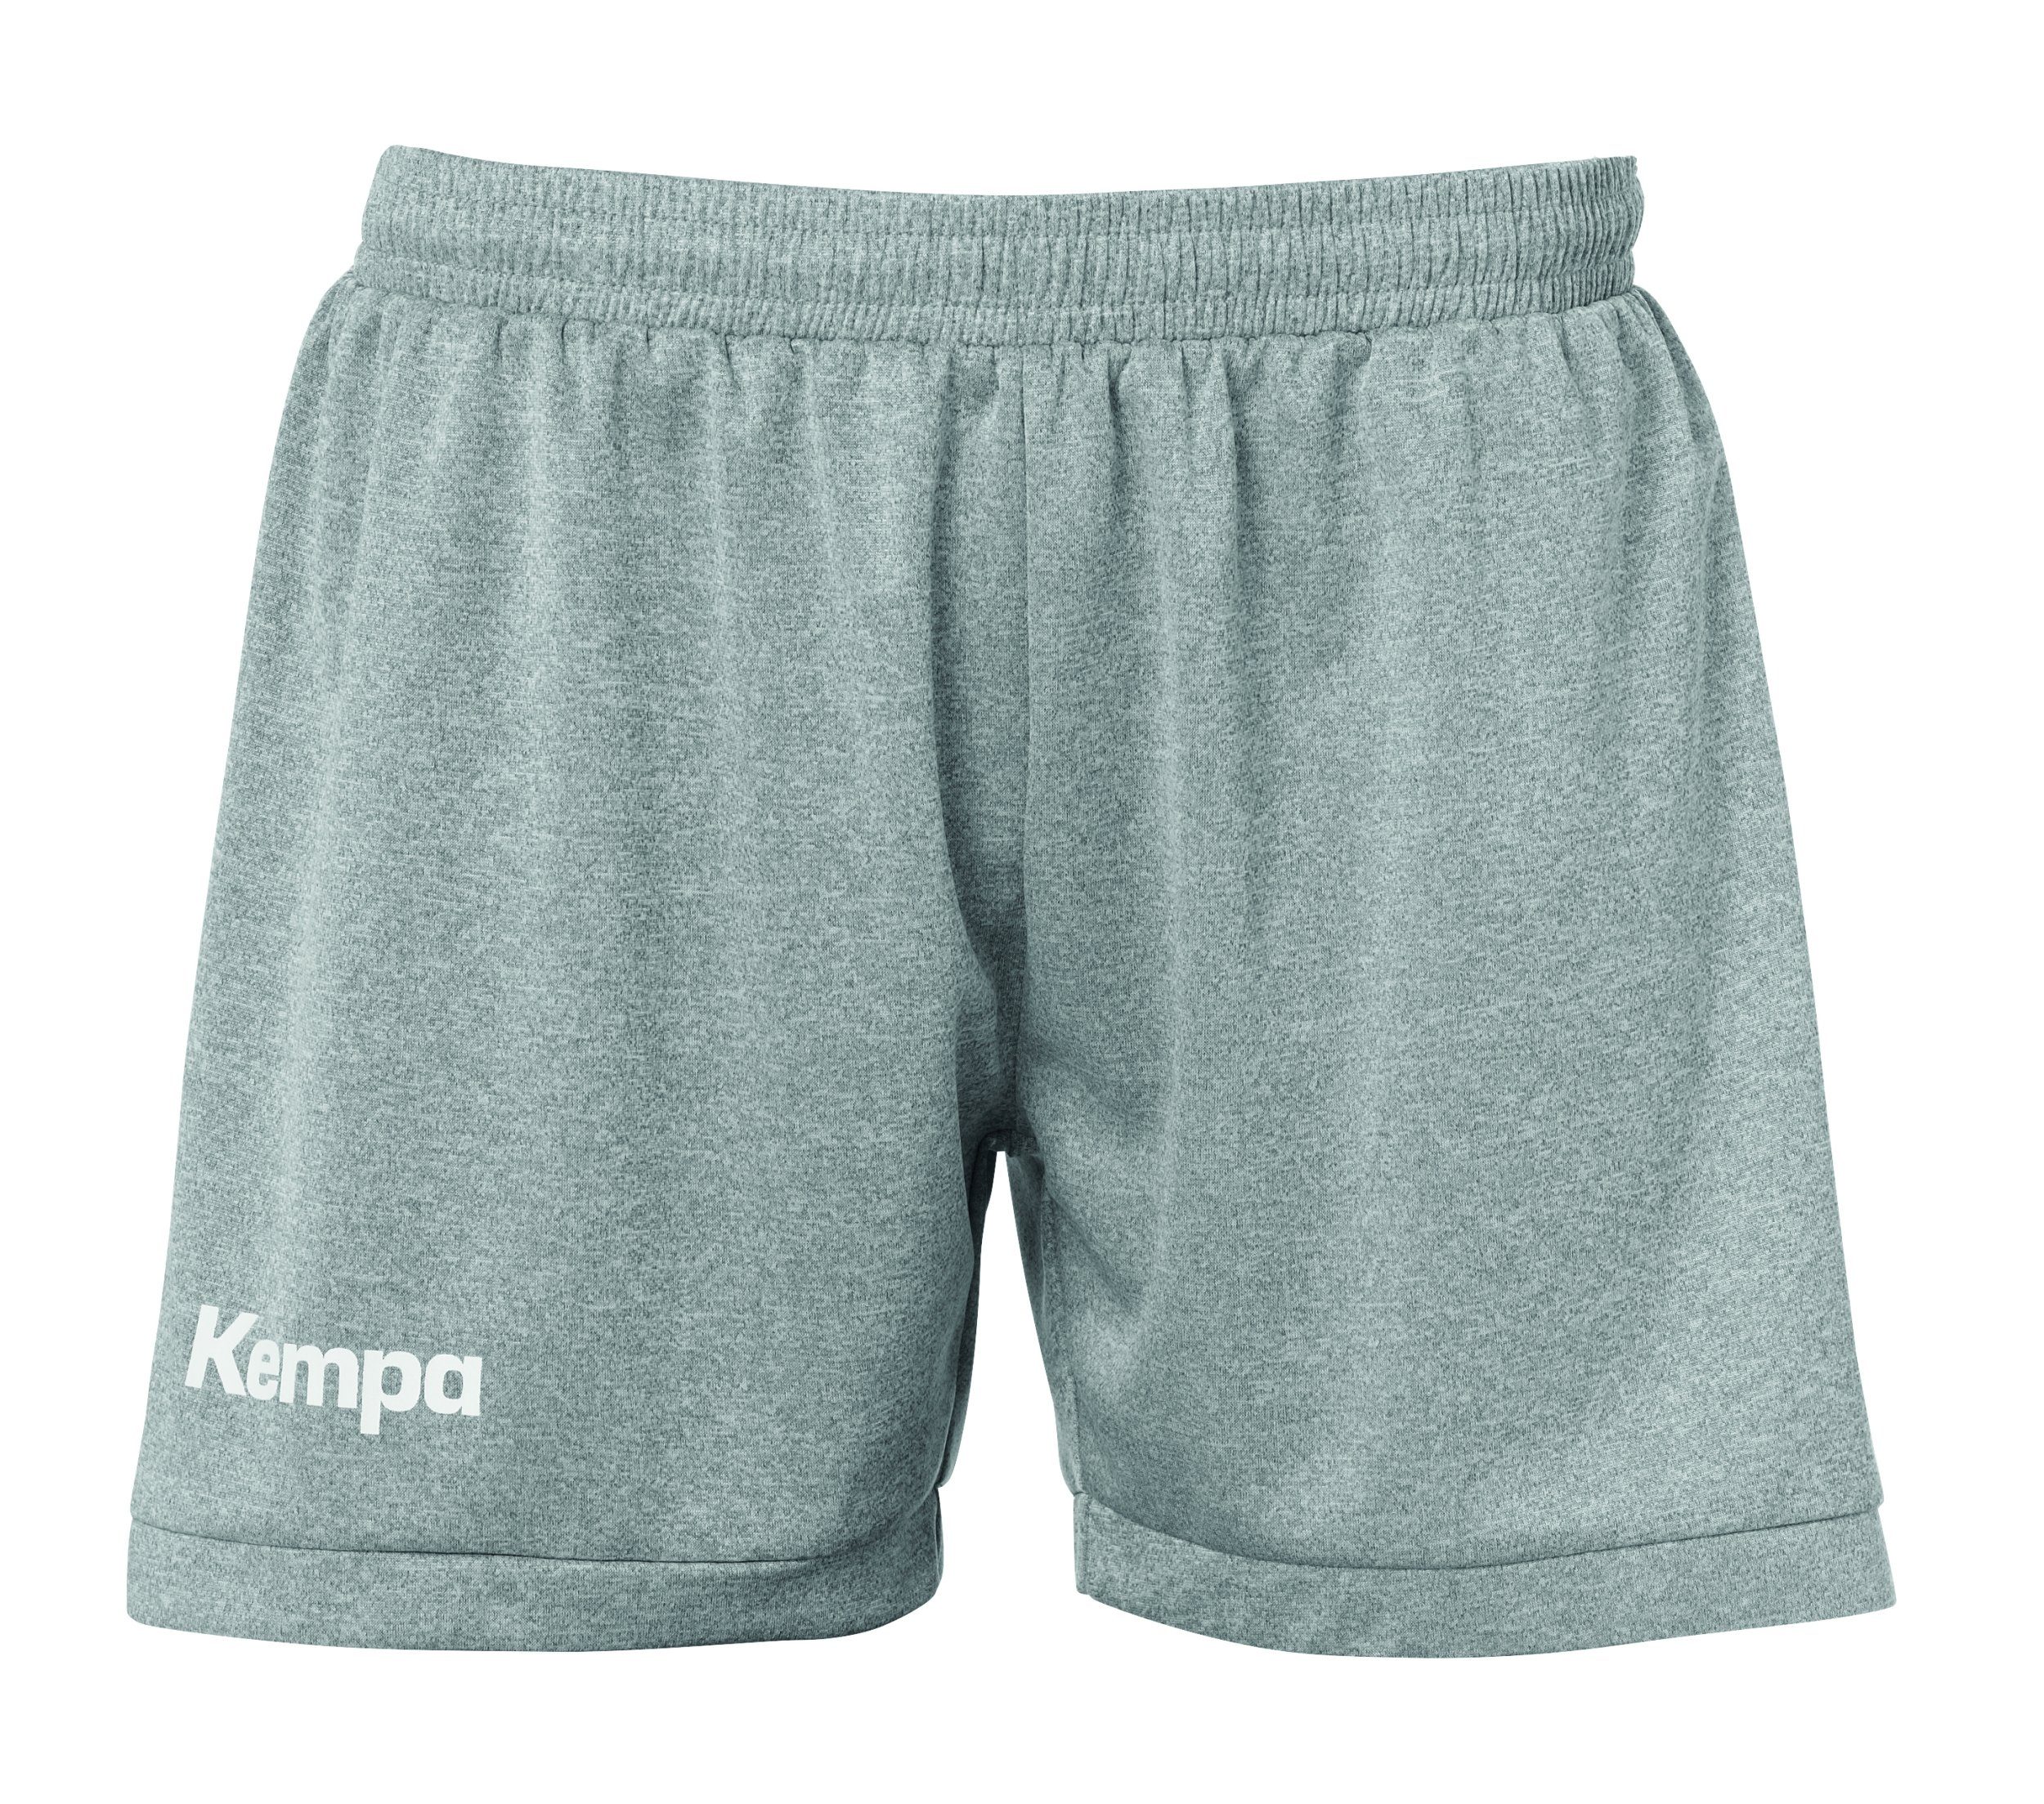 Kempa Shorts CORE 2.0 SWEATSHORTS WOMEN weiss